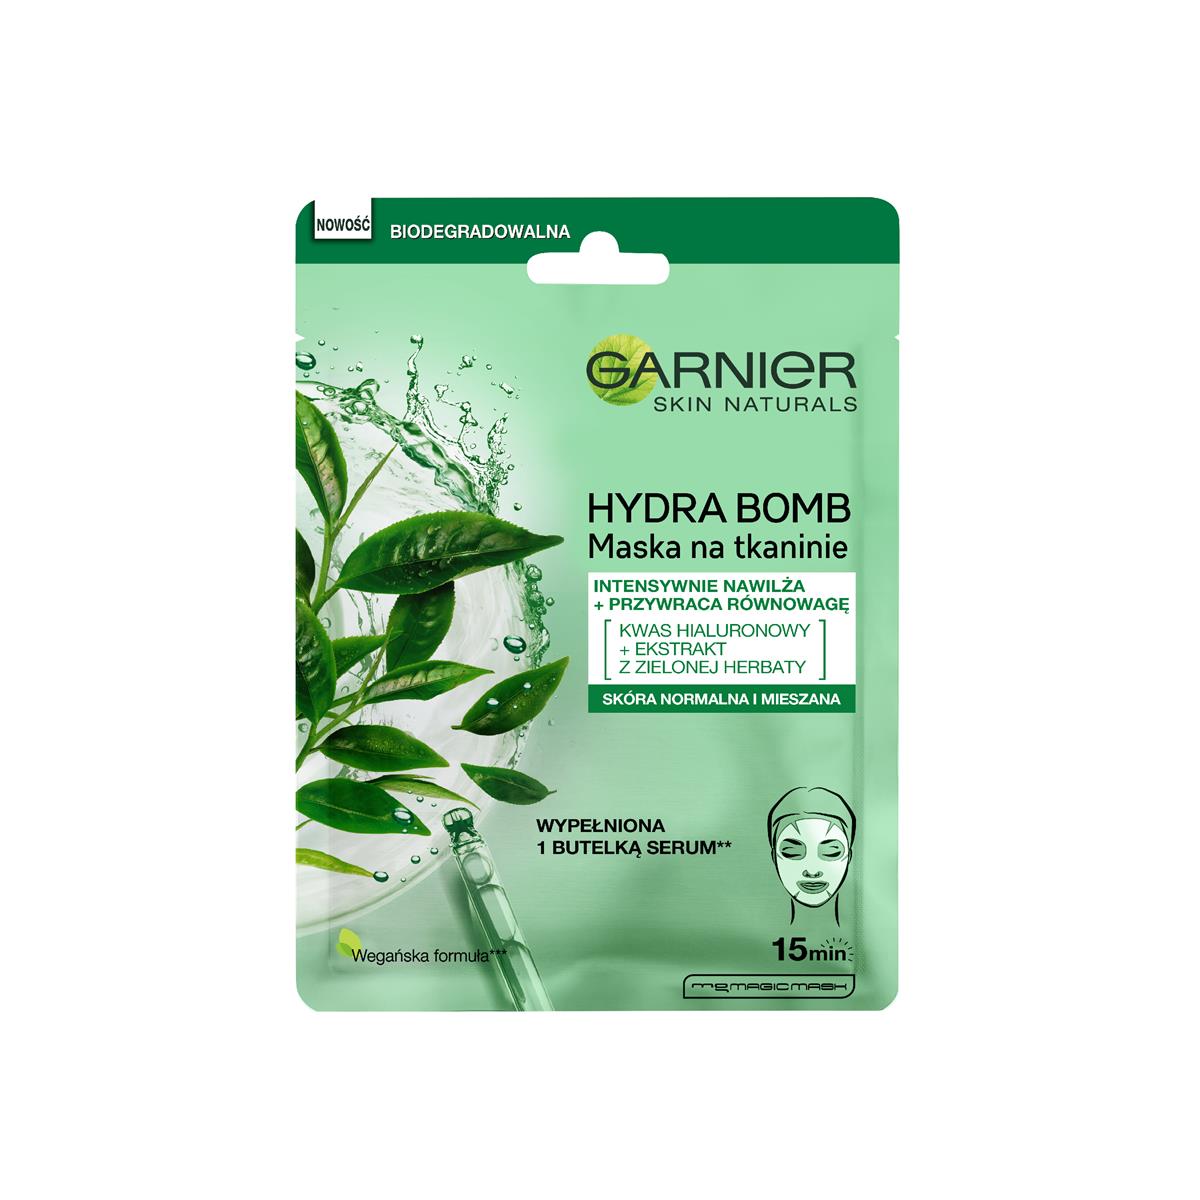 Garnier HYDRA BOMB Tissue Mask - Super Hydrating + Rebalancing - Maseczka w płacie do skóry mieszanej i normalnej - Zielona Herbata